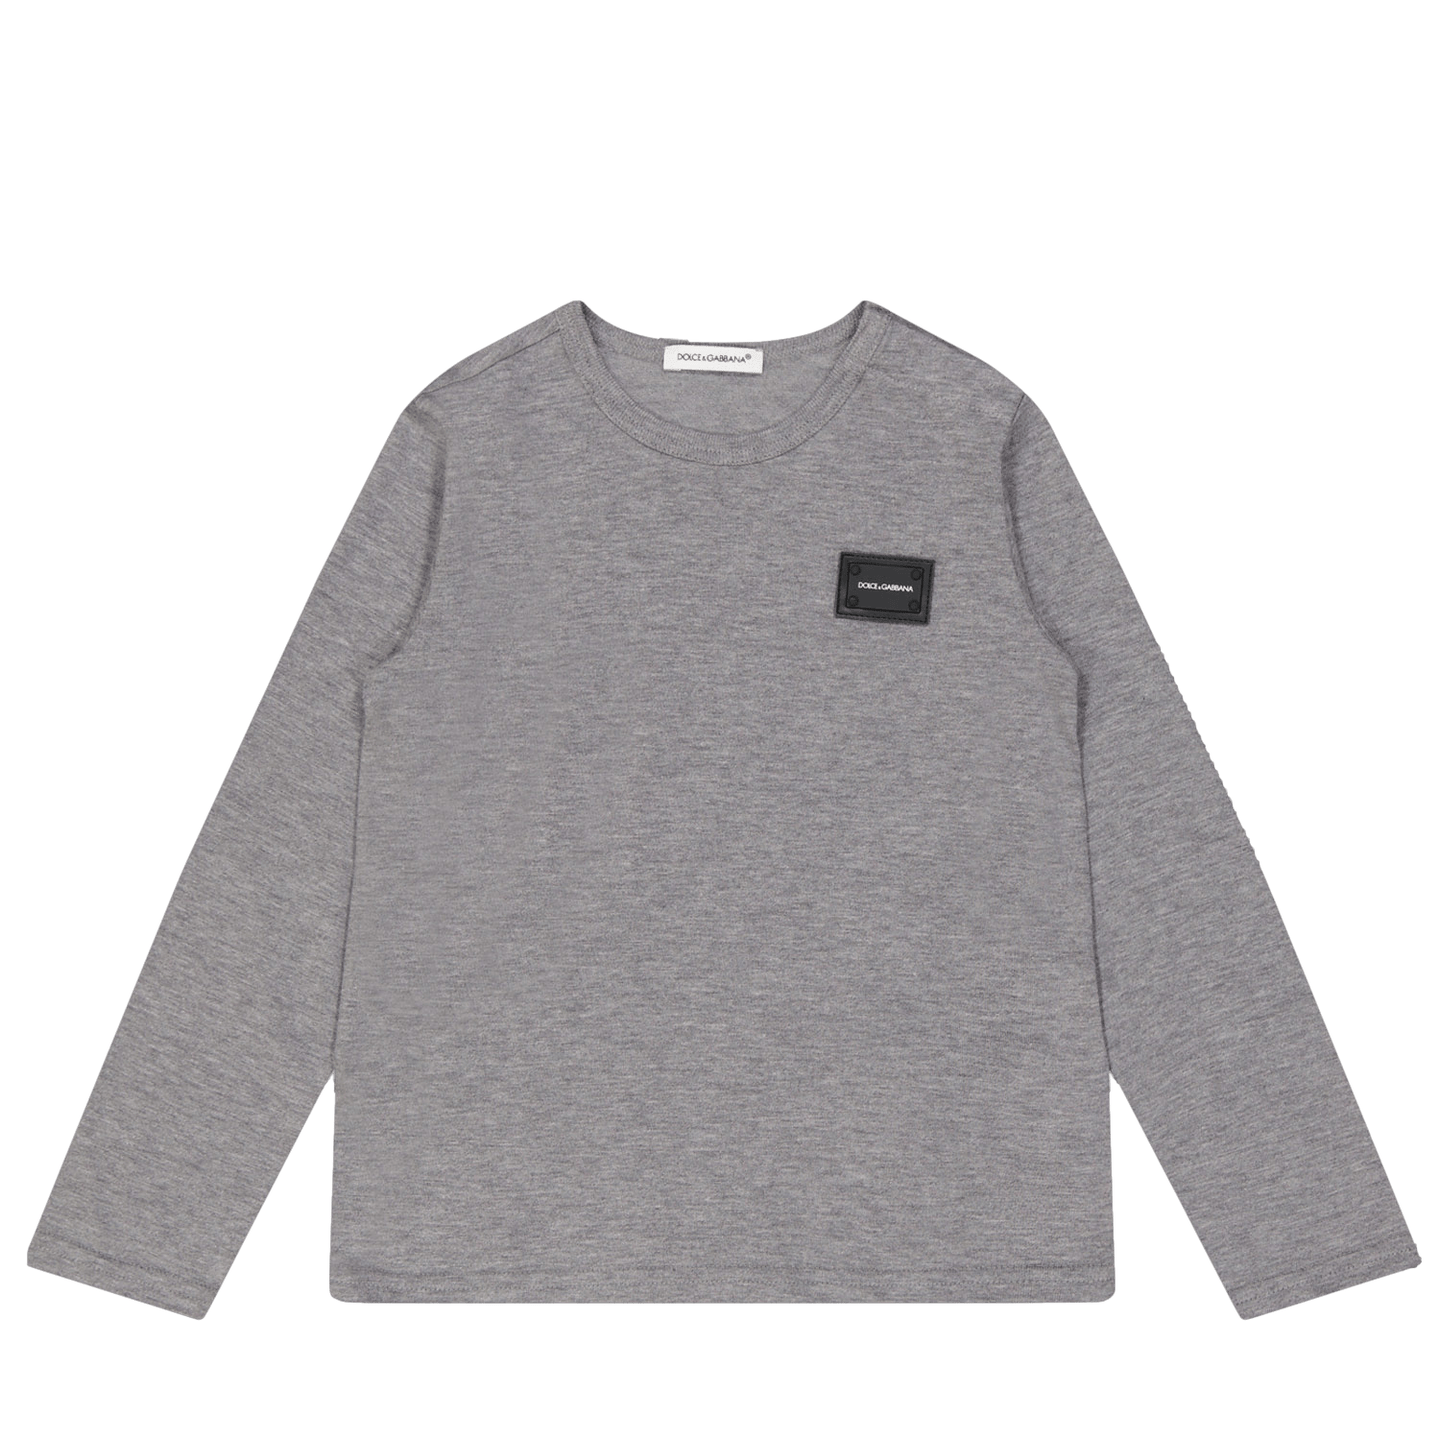 Dolce & Gabbana Baby Jongens T-Shirt Grijs 3/6